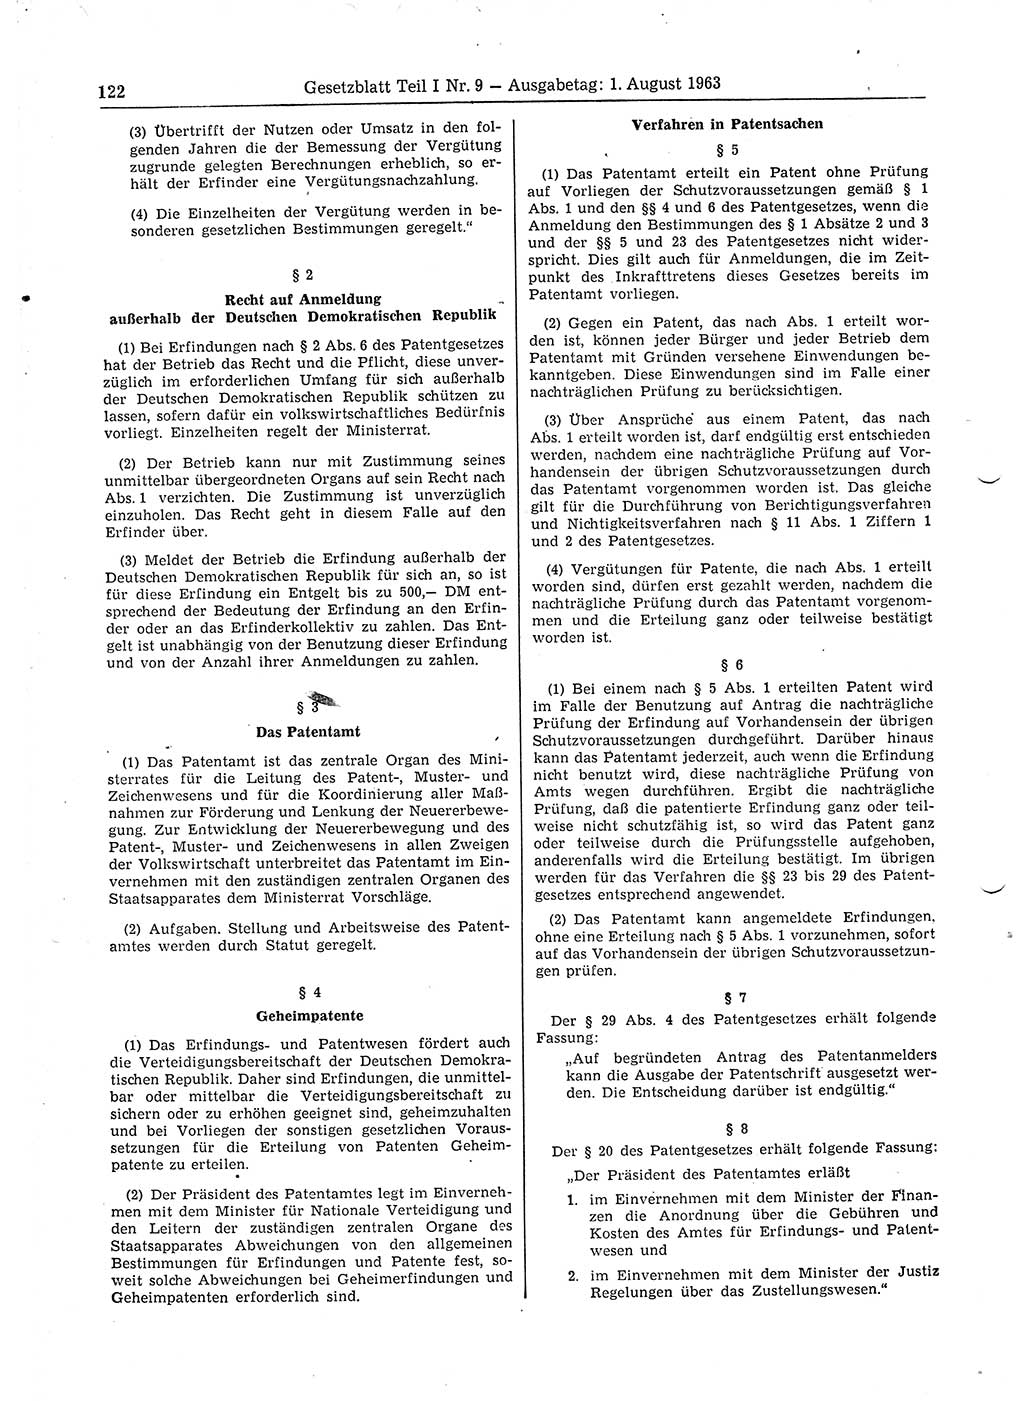 Gesetzblatt (GBl.) der Deutschen Demokratischen Republik (DDR) Teil Ⅰ 1963, Seite 122 (GBl. DDR Ⅰ 1963, S. 122)